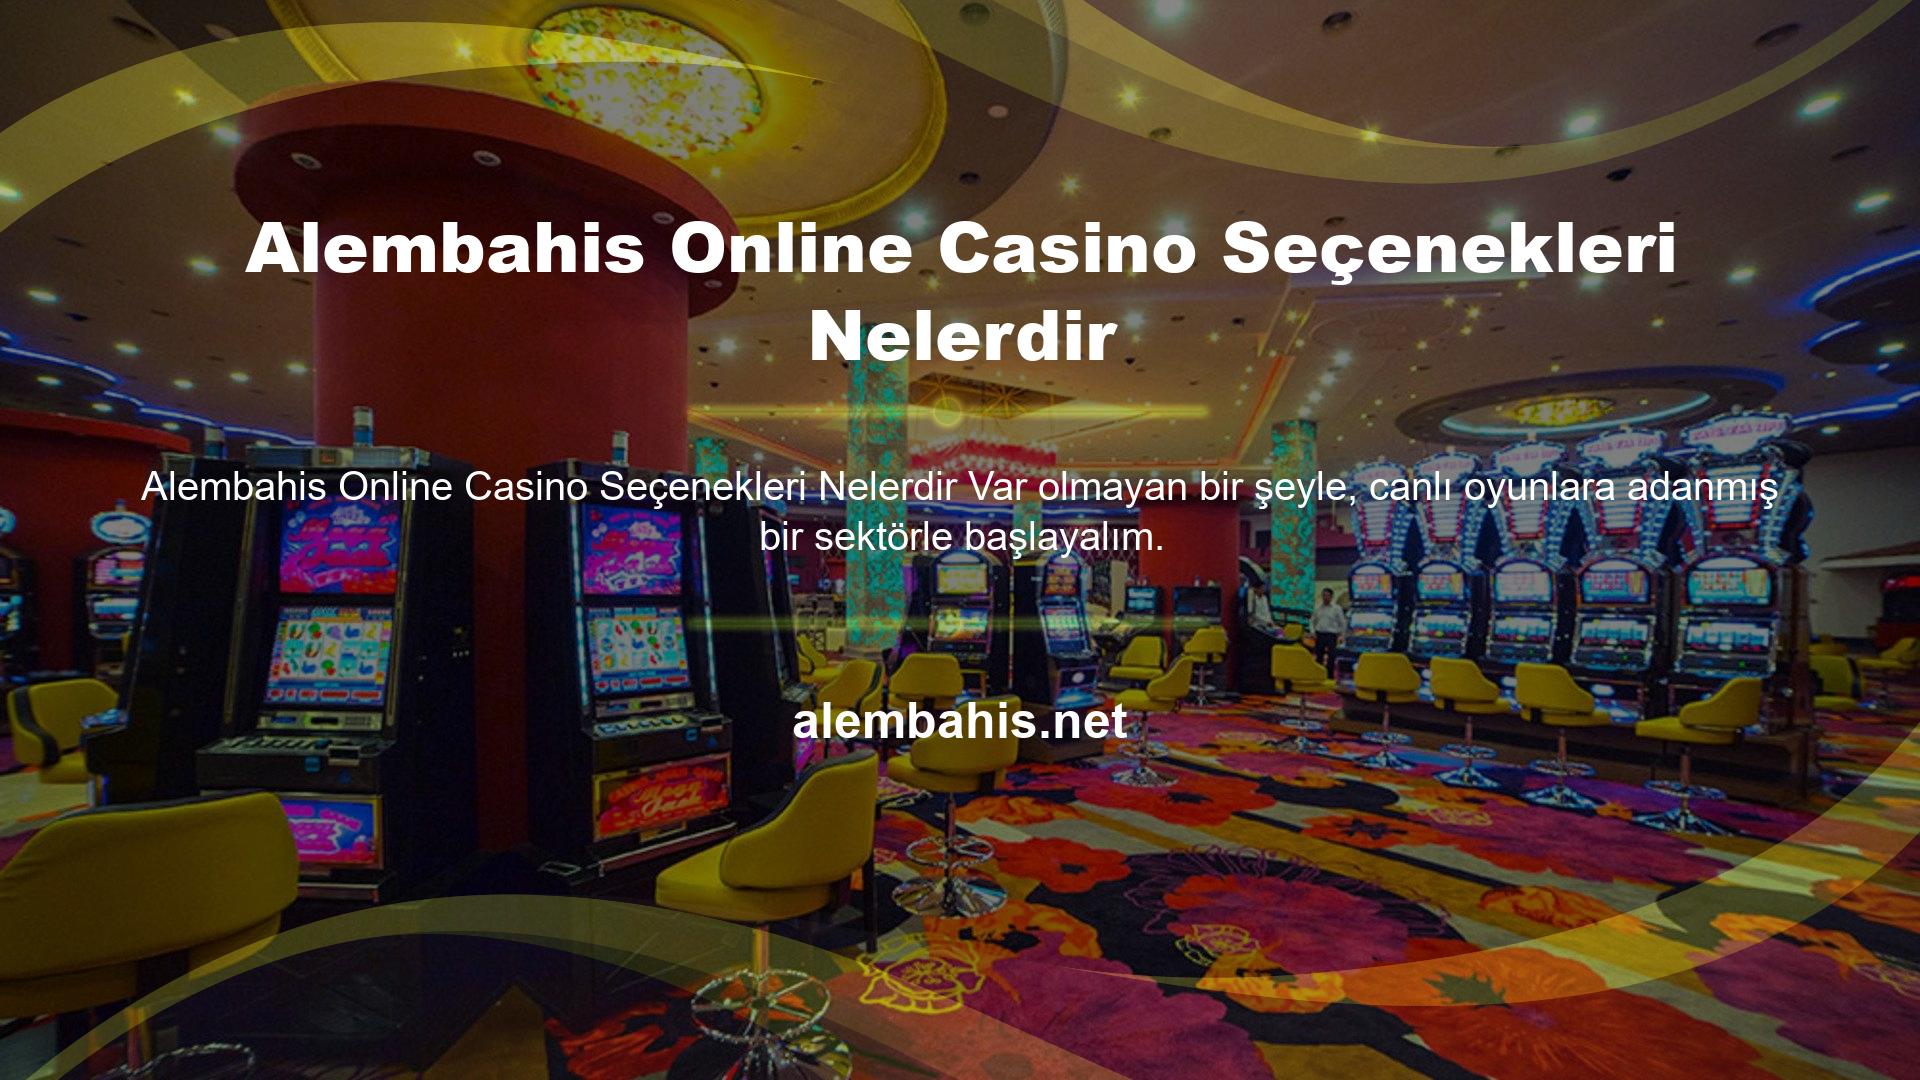 Bahis sitesi, casino pazarının son yıllarda ürettiği mükemmel canlı casinolarla rekabet etmemeyi seçti